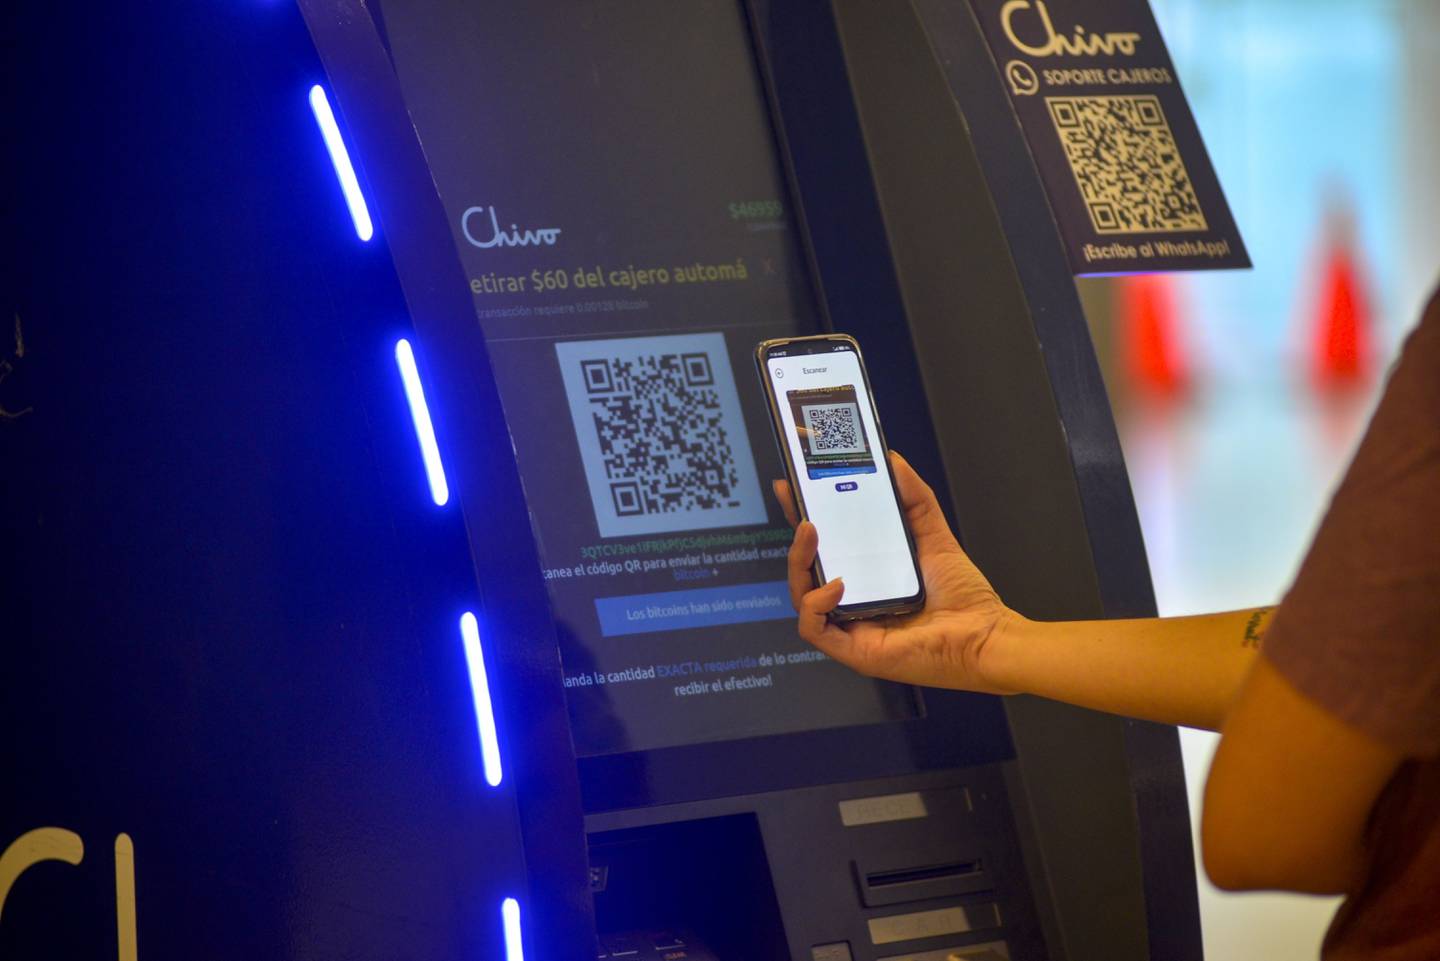 La billetera bitcoin del gobierno Chivo Wallet dispone una red de 200 cajeros automáticos para facilitar la conversión entre bitcoin y dólares.